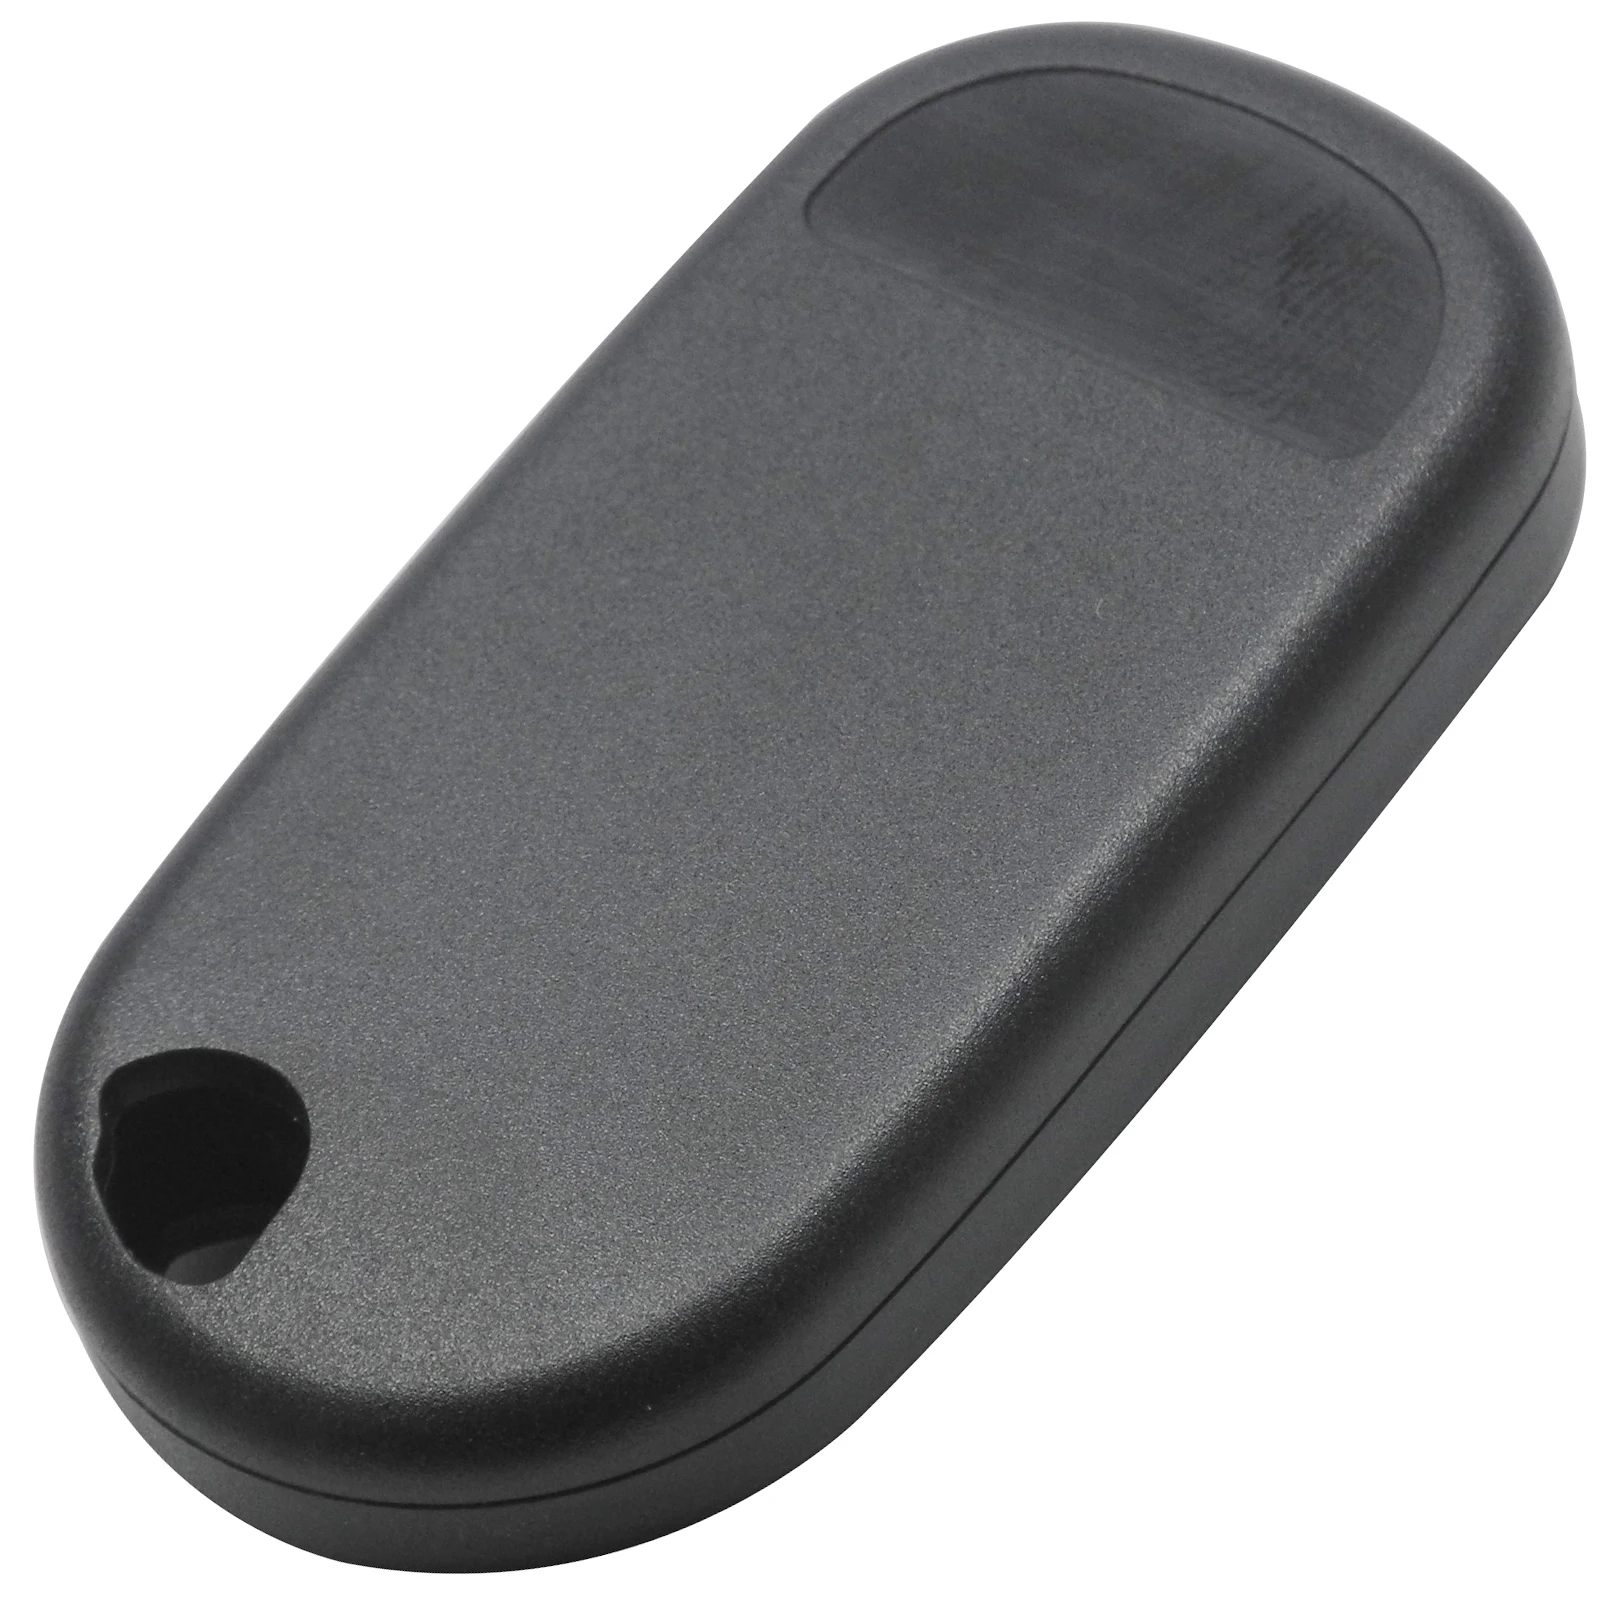 Jingyuqin 2/3/4 кнопки дистанционный пульт дистанционного управления ключа автомобиля в виде ракушки качество хорошо подходит для Honda Civic crv дистанционный ключ